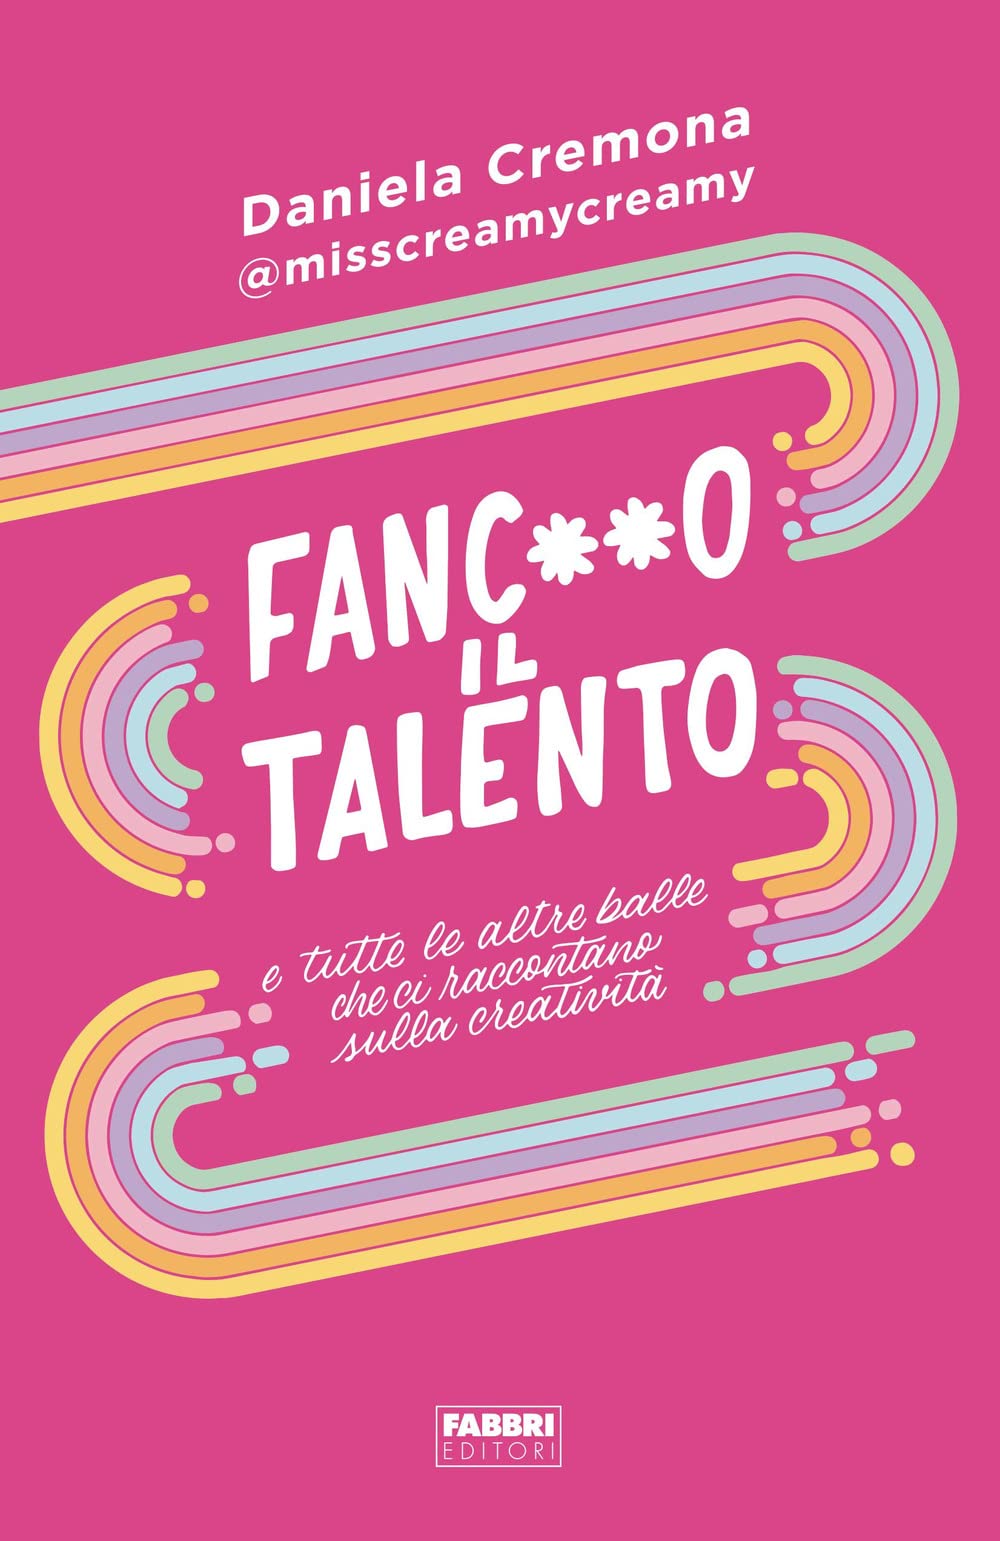 Fanc**o Il Talento di Daniela Cremona – Recensione